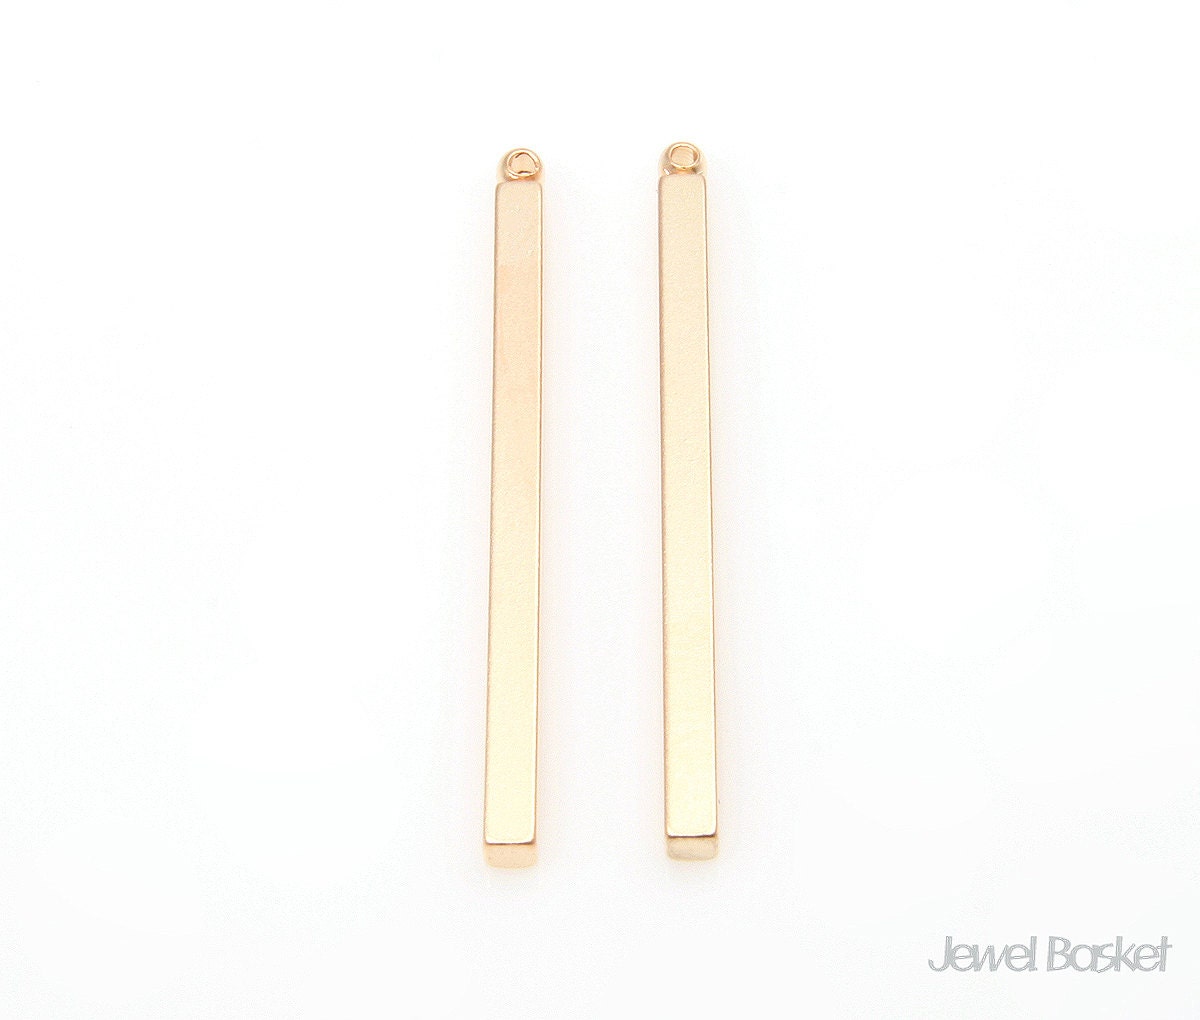 Matte Gold Bar Pendant for Earrings / 2mm x 32mm / BMG280-P | Etsy